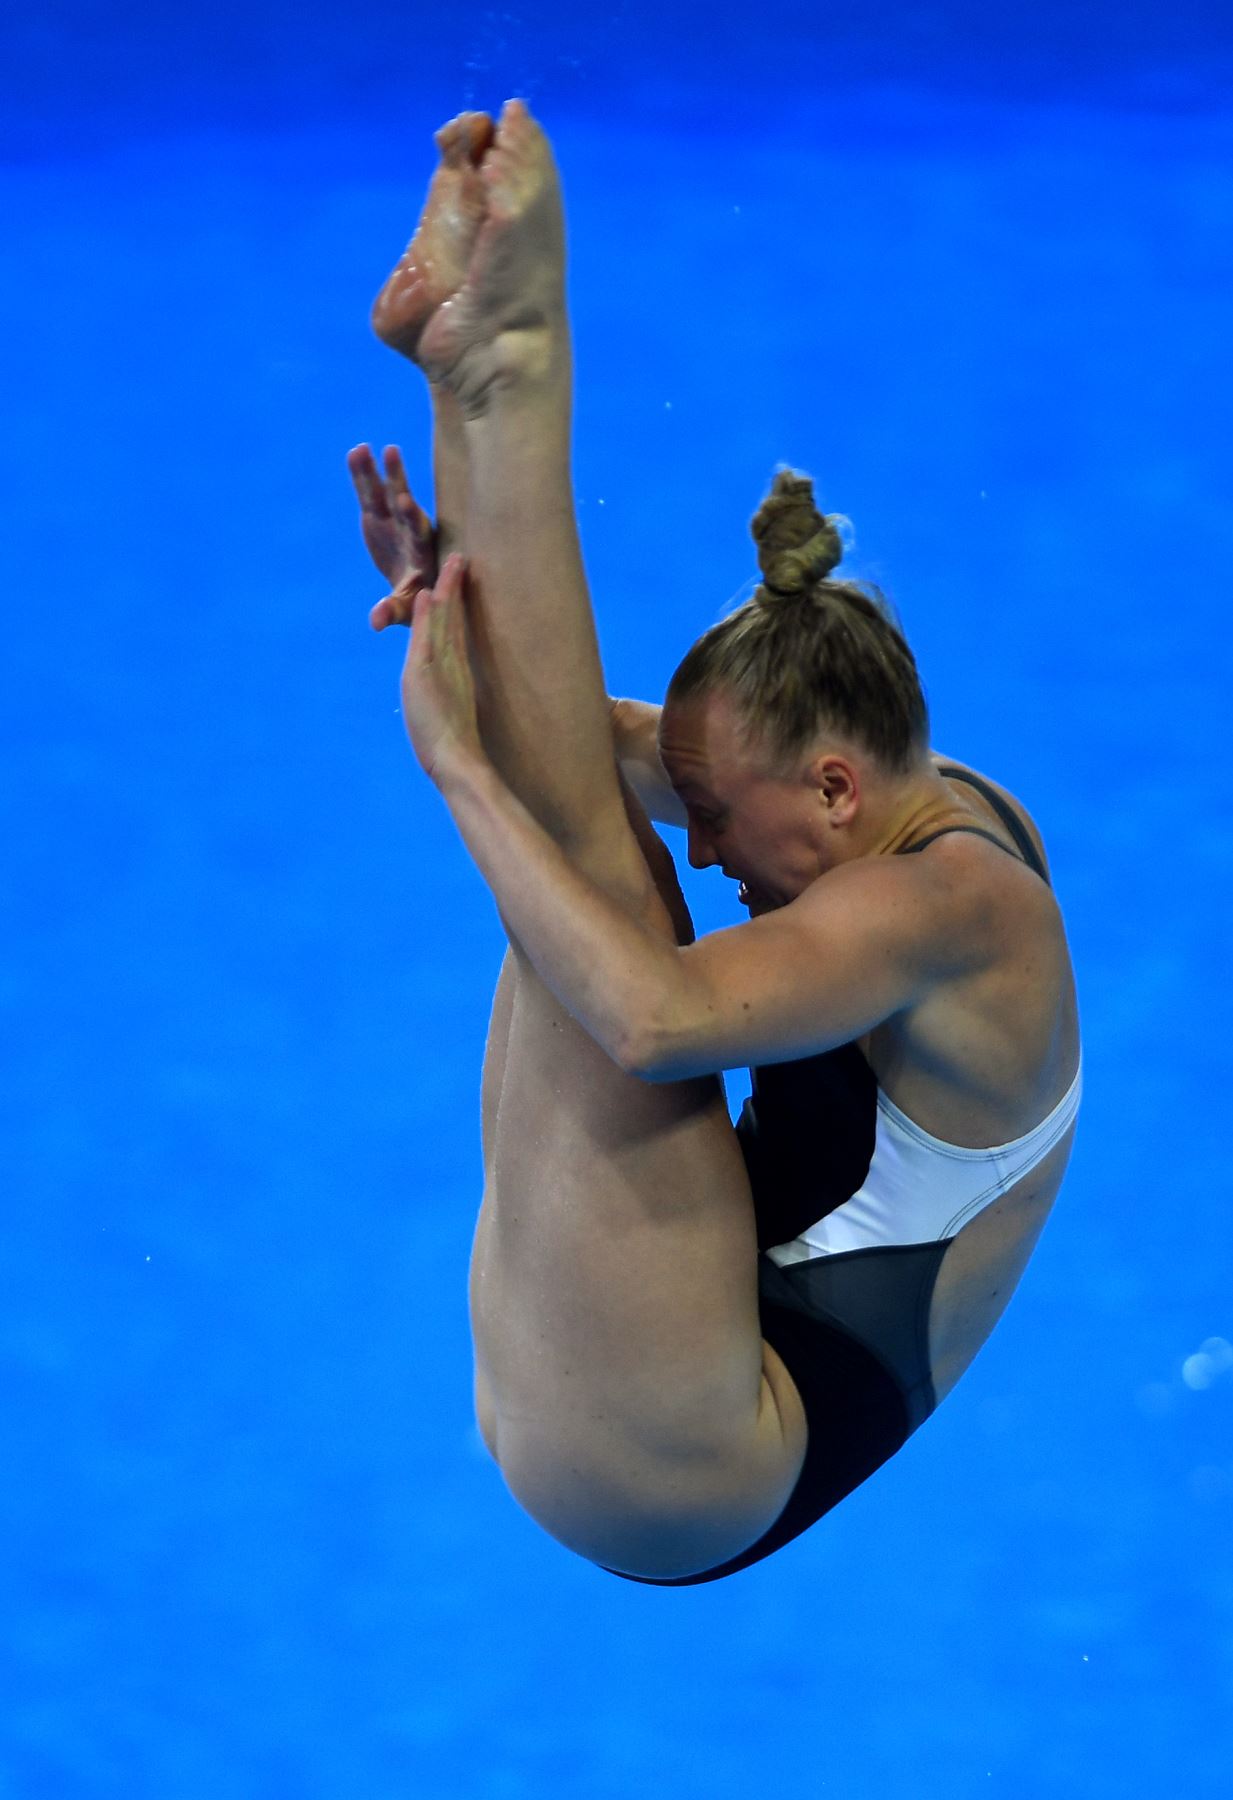 La estadounidense Sarah Bacon hace su salto durante la final de trampolín femenino de 1m de la competencia de buceo durante los Juegos Panamericanos de Lima 2019. AFP